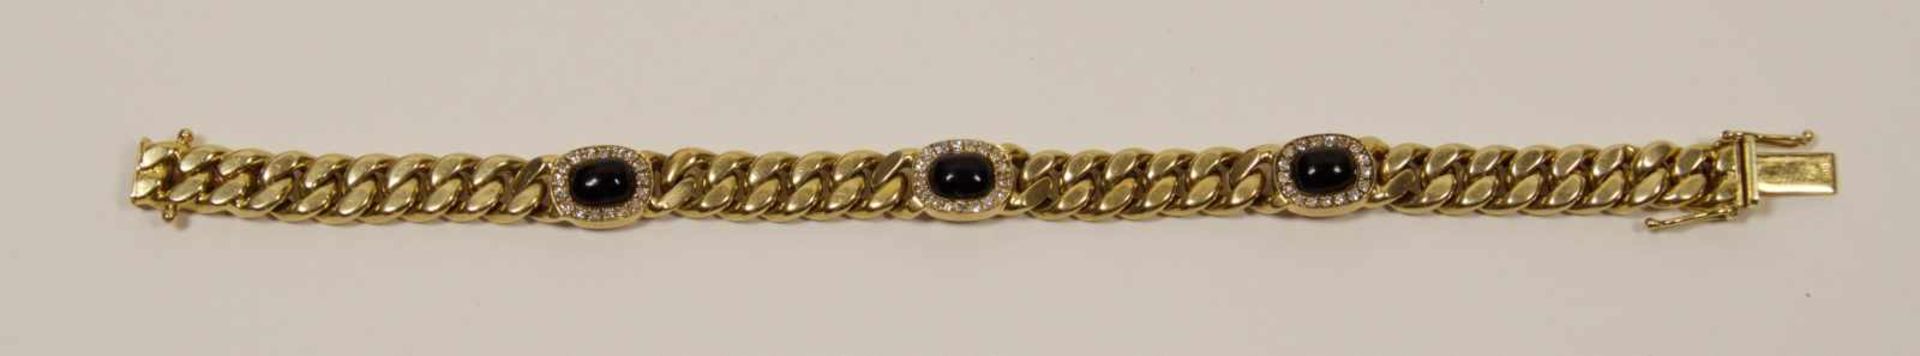 Damenarmband, um 197014 kt. Gold, 3 Saphire von Brillanten eingerahmt, Gewicht 25 g, Länge 18,5 cm